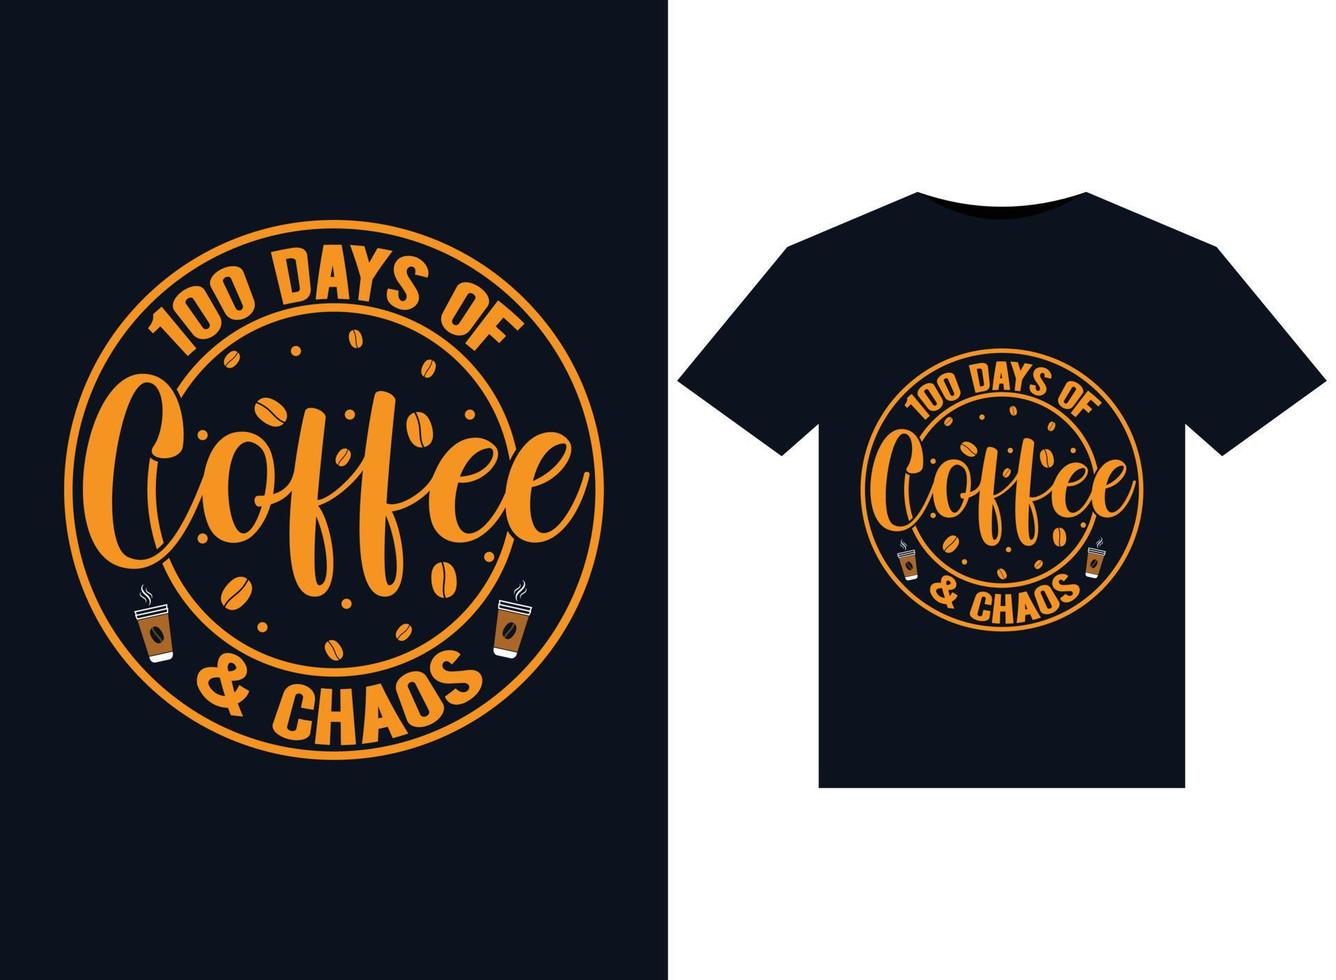 Ilustrações de 100 dias de caos de café para design de camisetas prontas para impressão vetor